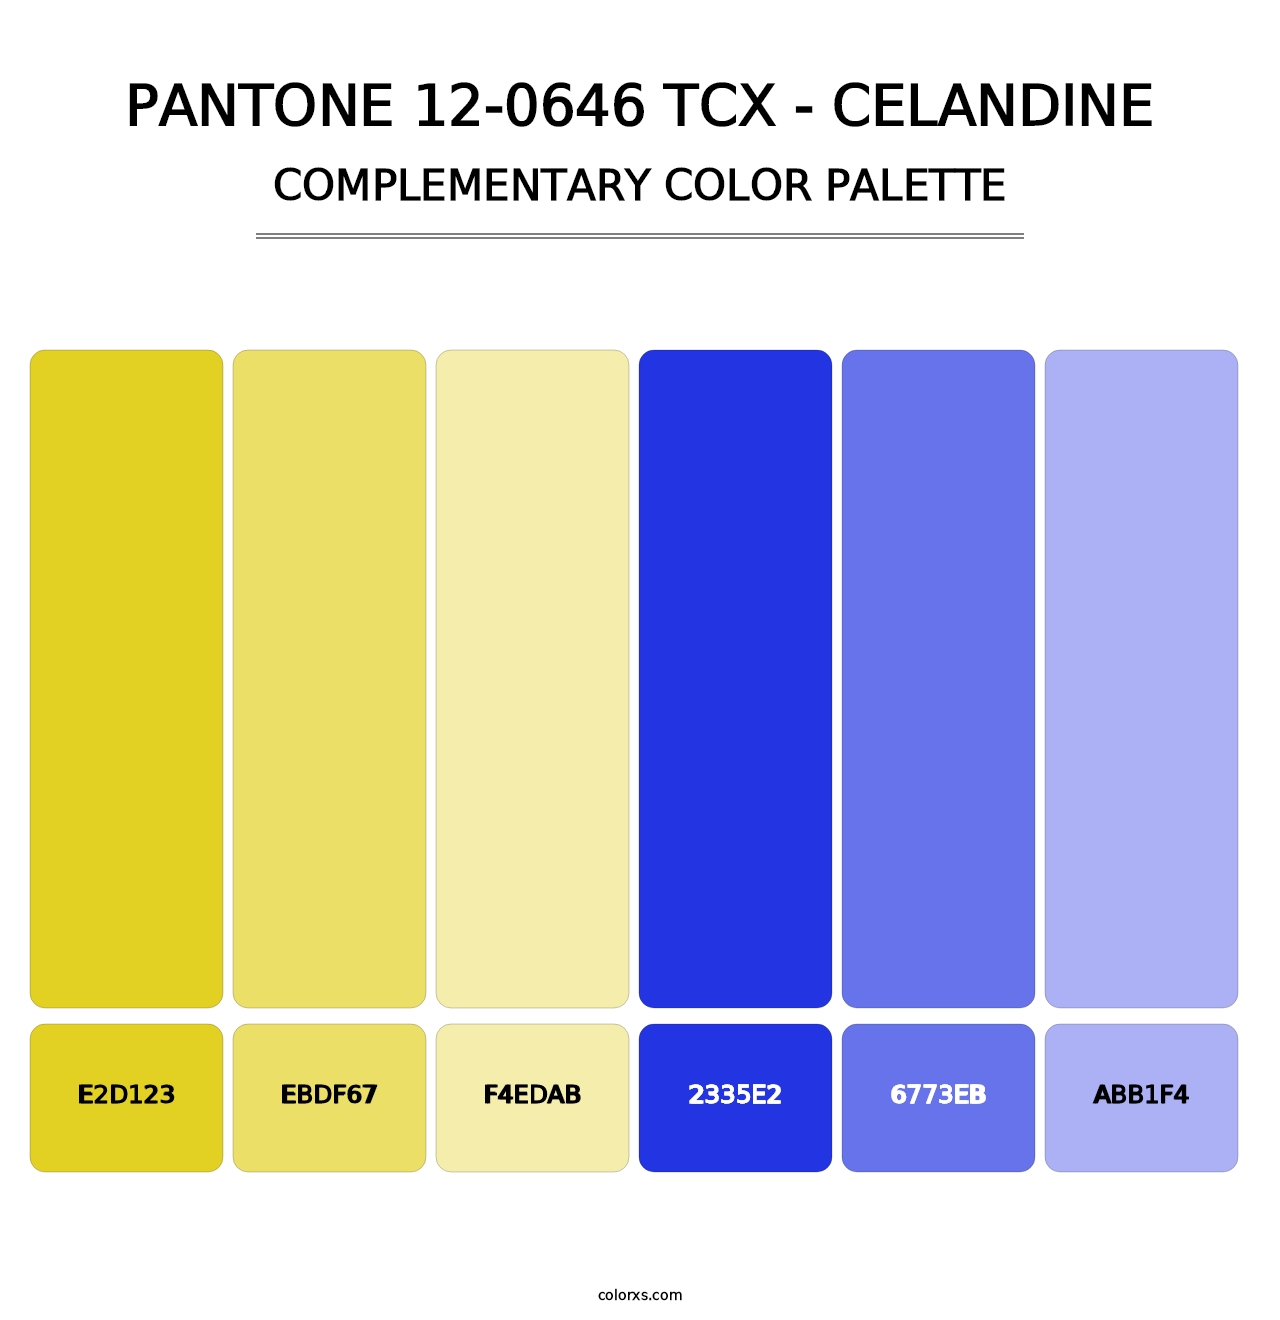 PANTONE 12-0646 TCX - Celandine - Complementary Color Palette